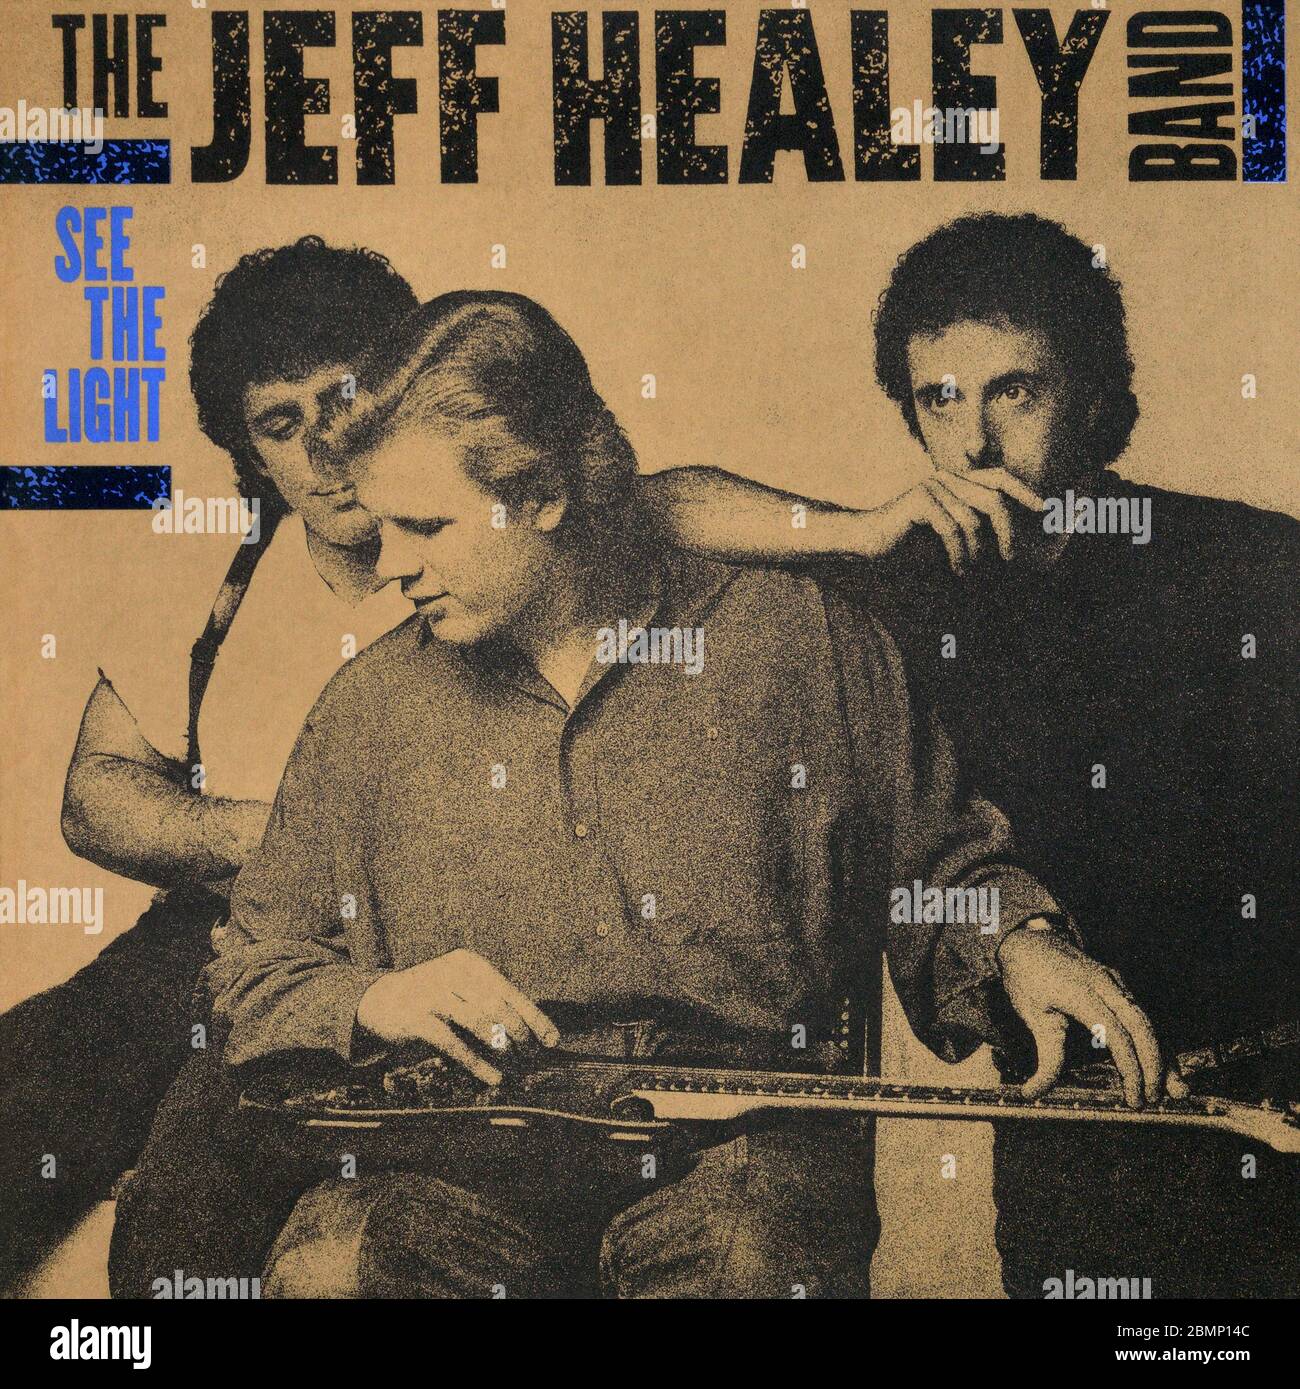 The Jeff Healey Band - copertina originale dell'album in vinile - See the Light - 1988 Foto Stock